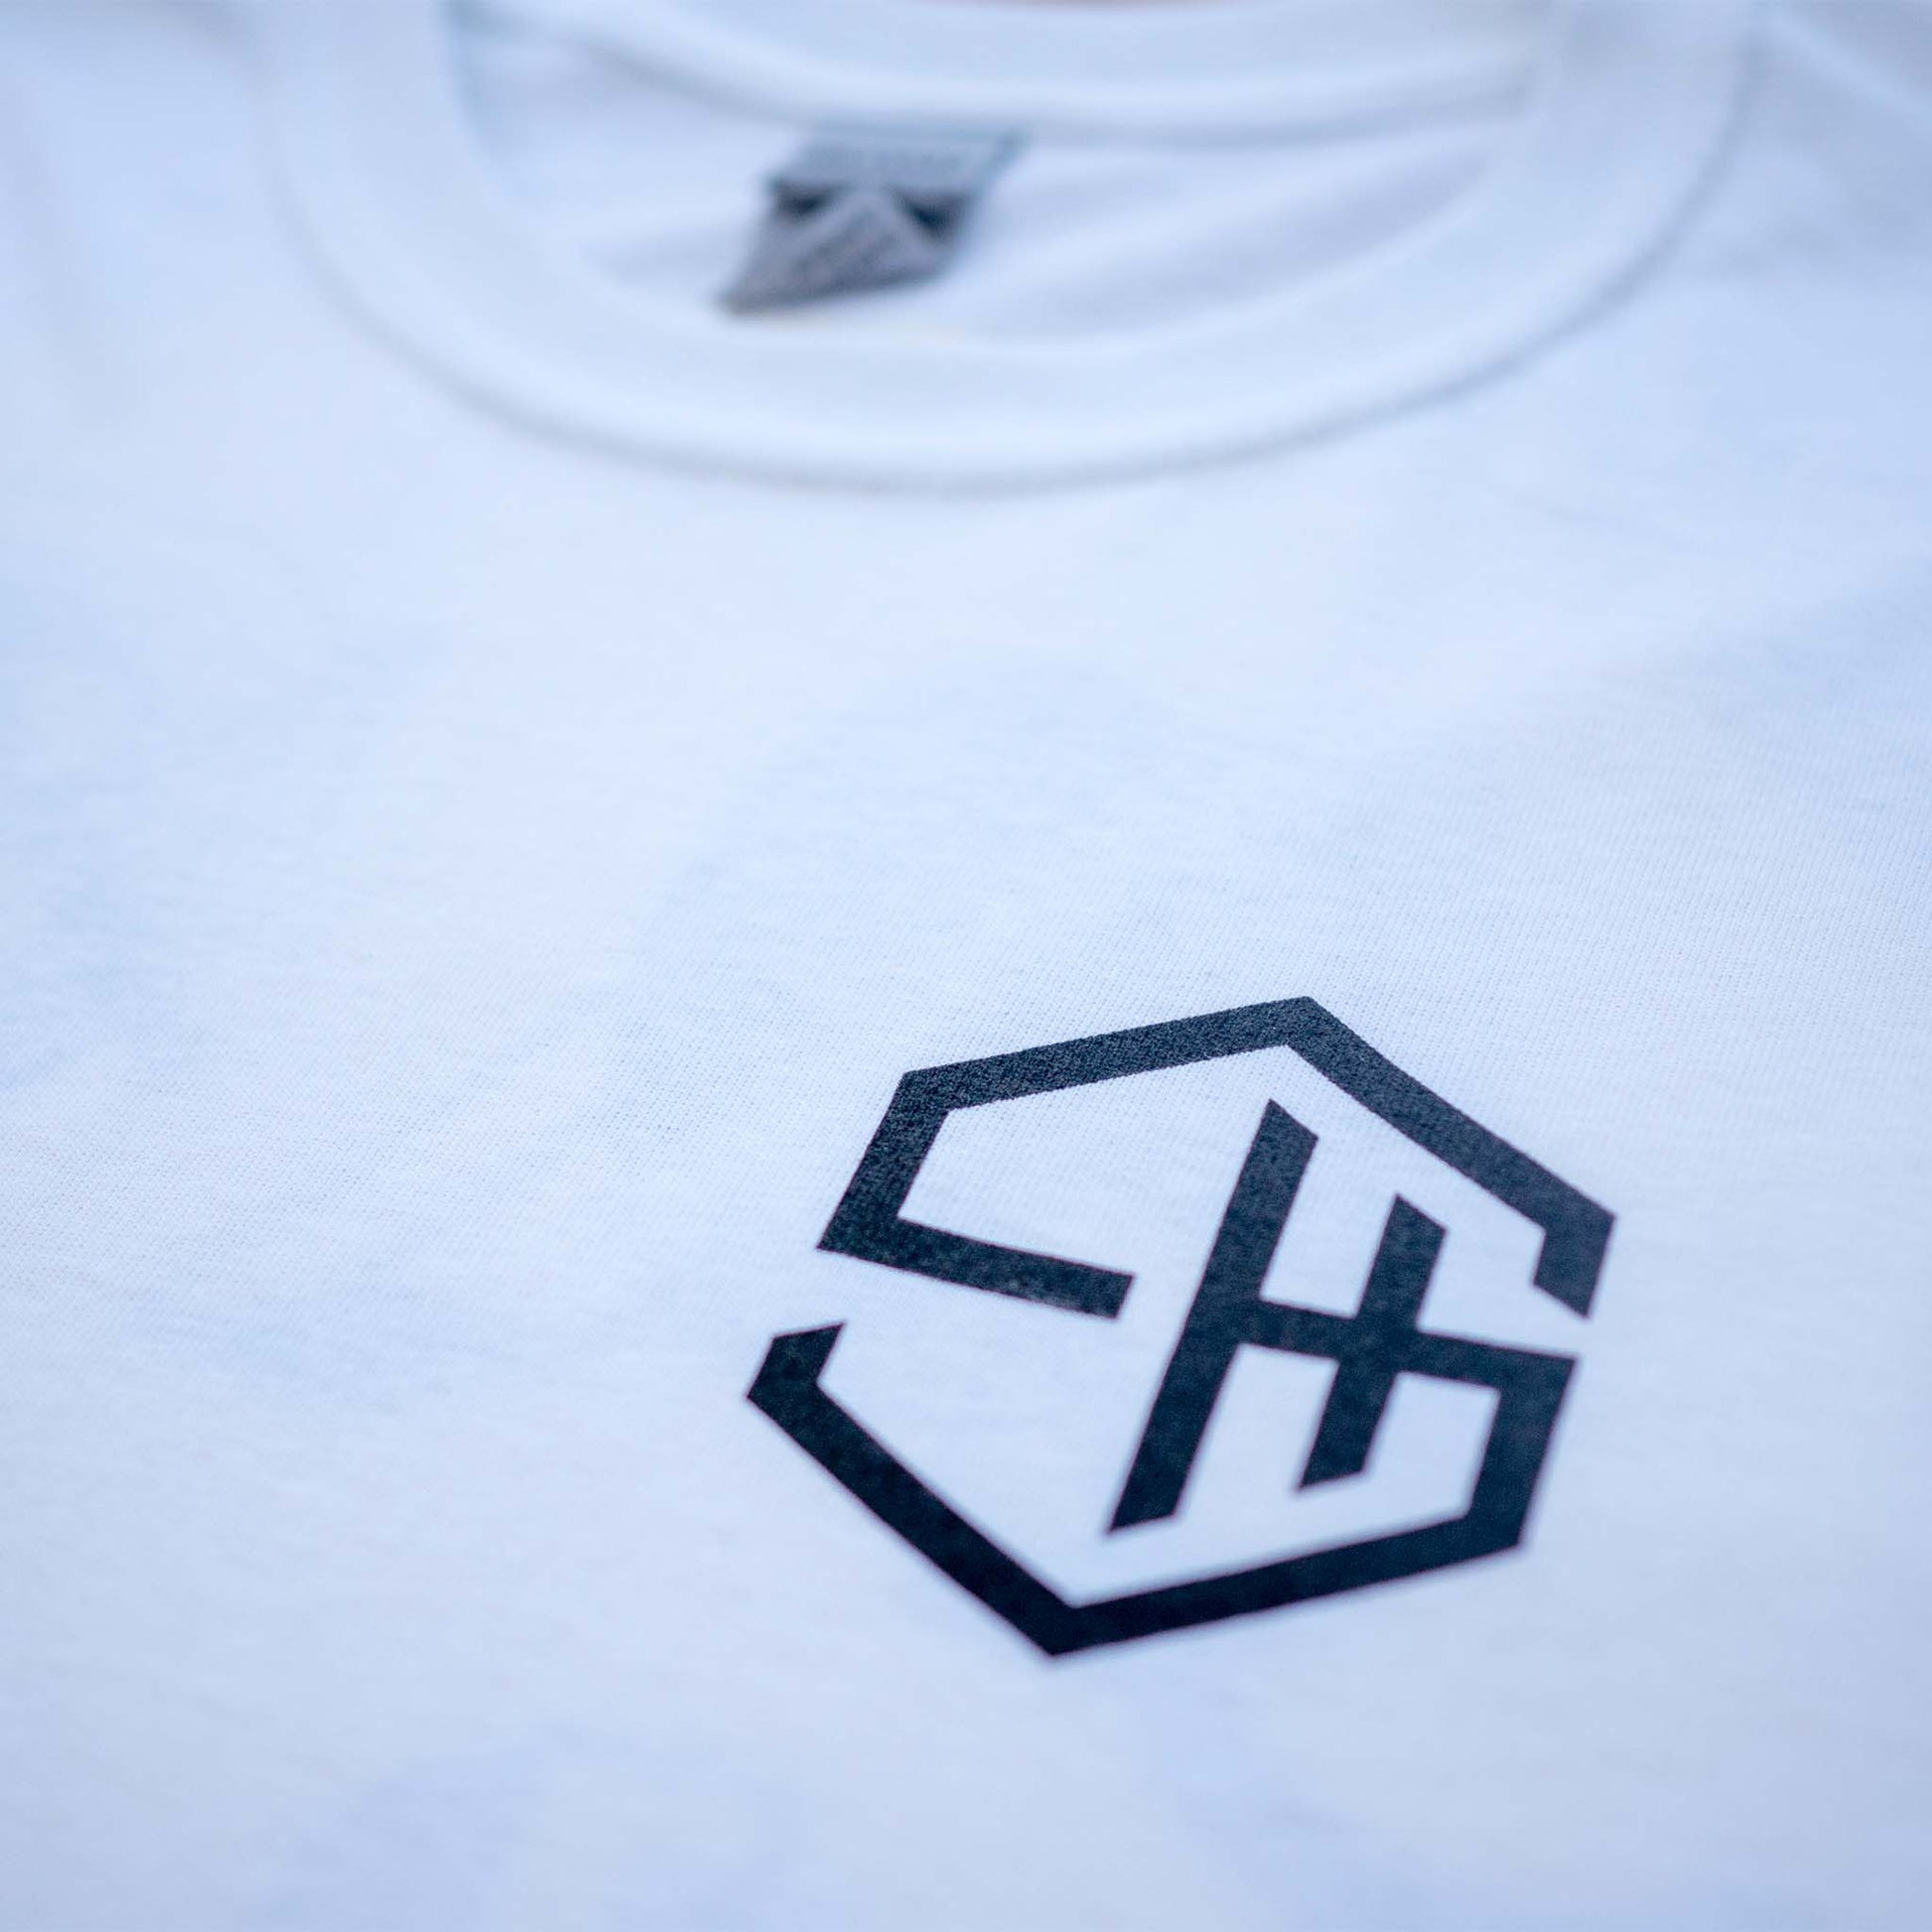 Subhustle logo chest print detail on white acid house music t-shirt design